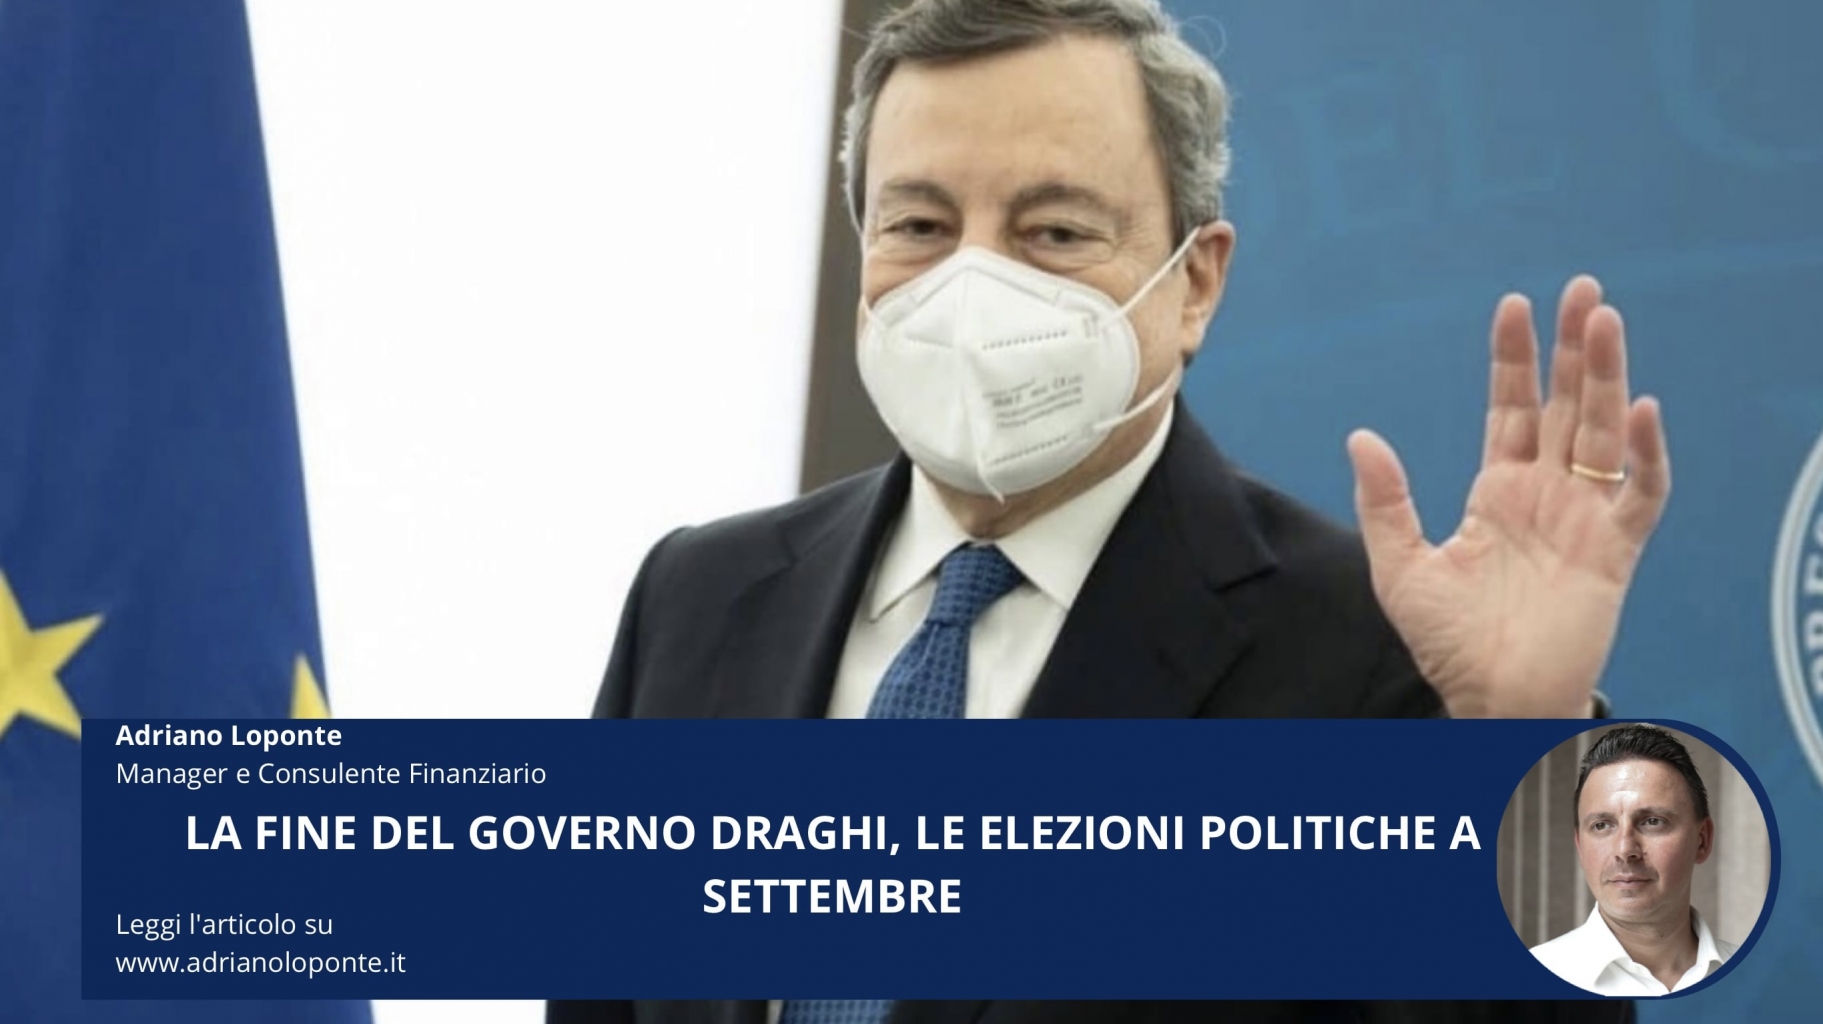 La fine del governo Draghi, le elezioni politiche a settembre